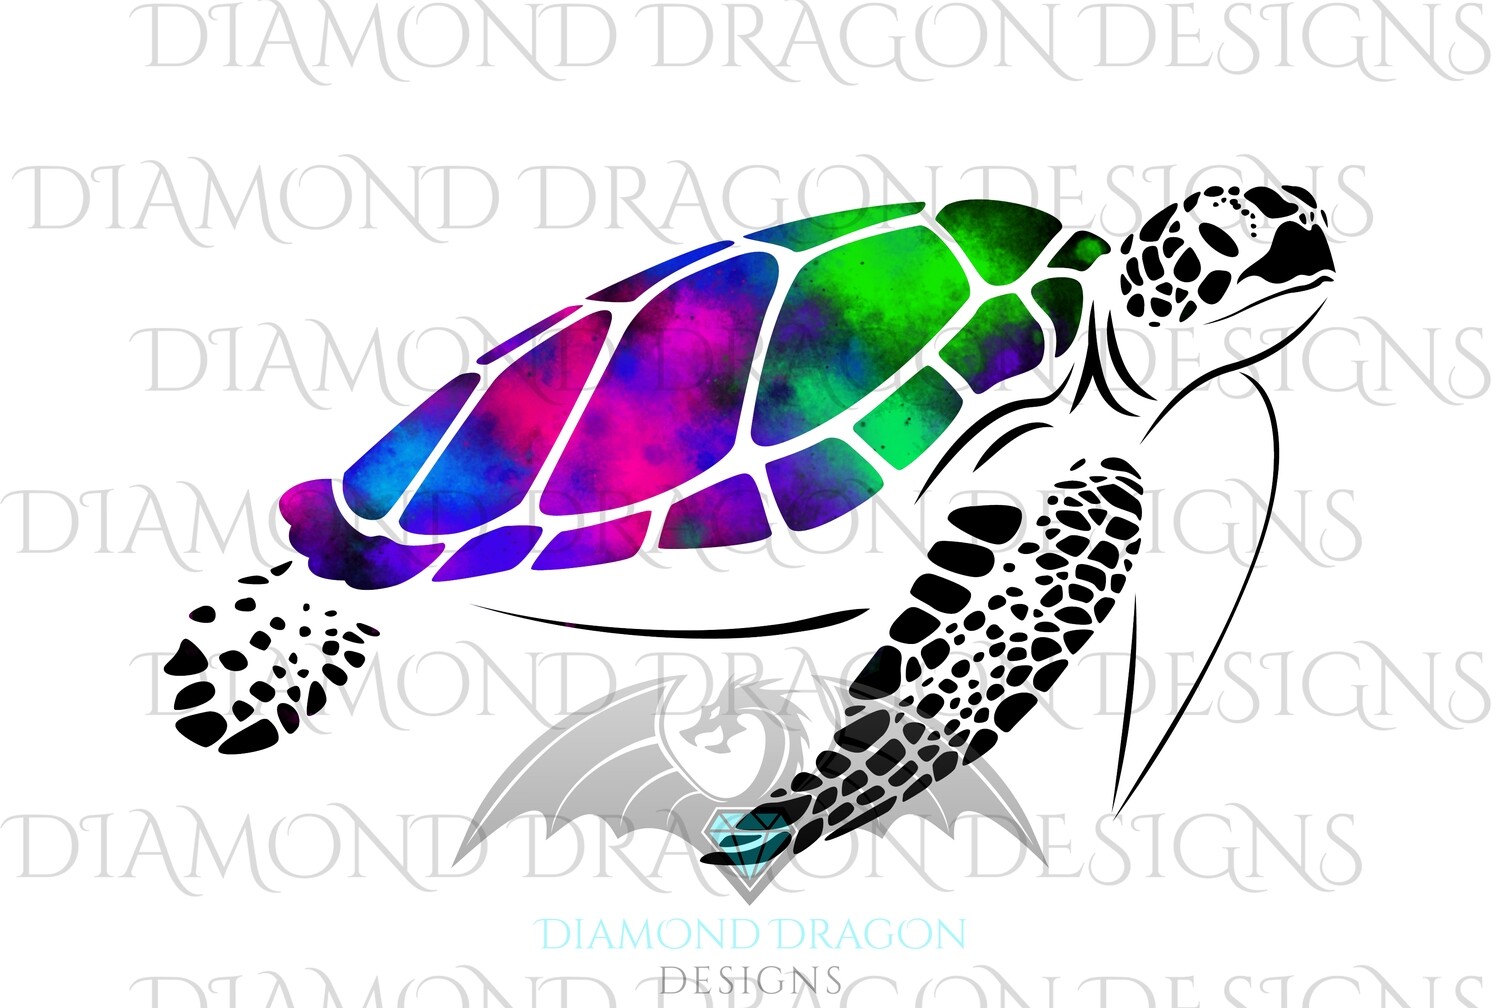 Turtles - Sea Turtle, Galaxy Sea Turtle, Rainbow Sea Turtle, Watercolor Sea Turtle, Digital Image